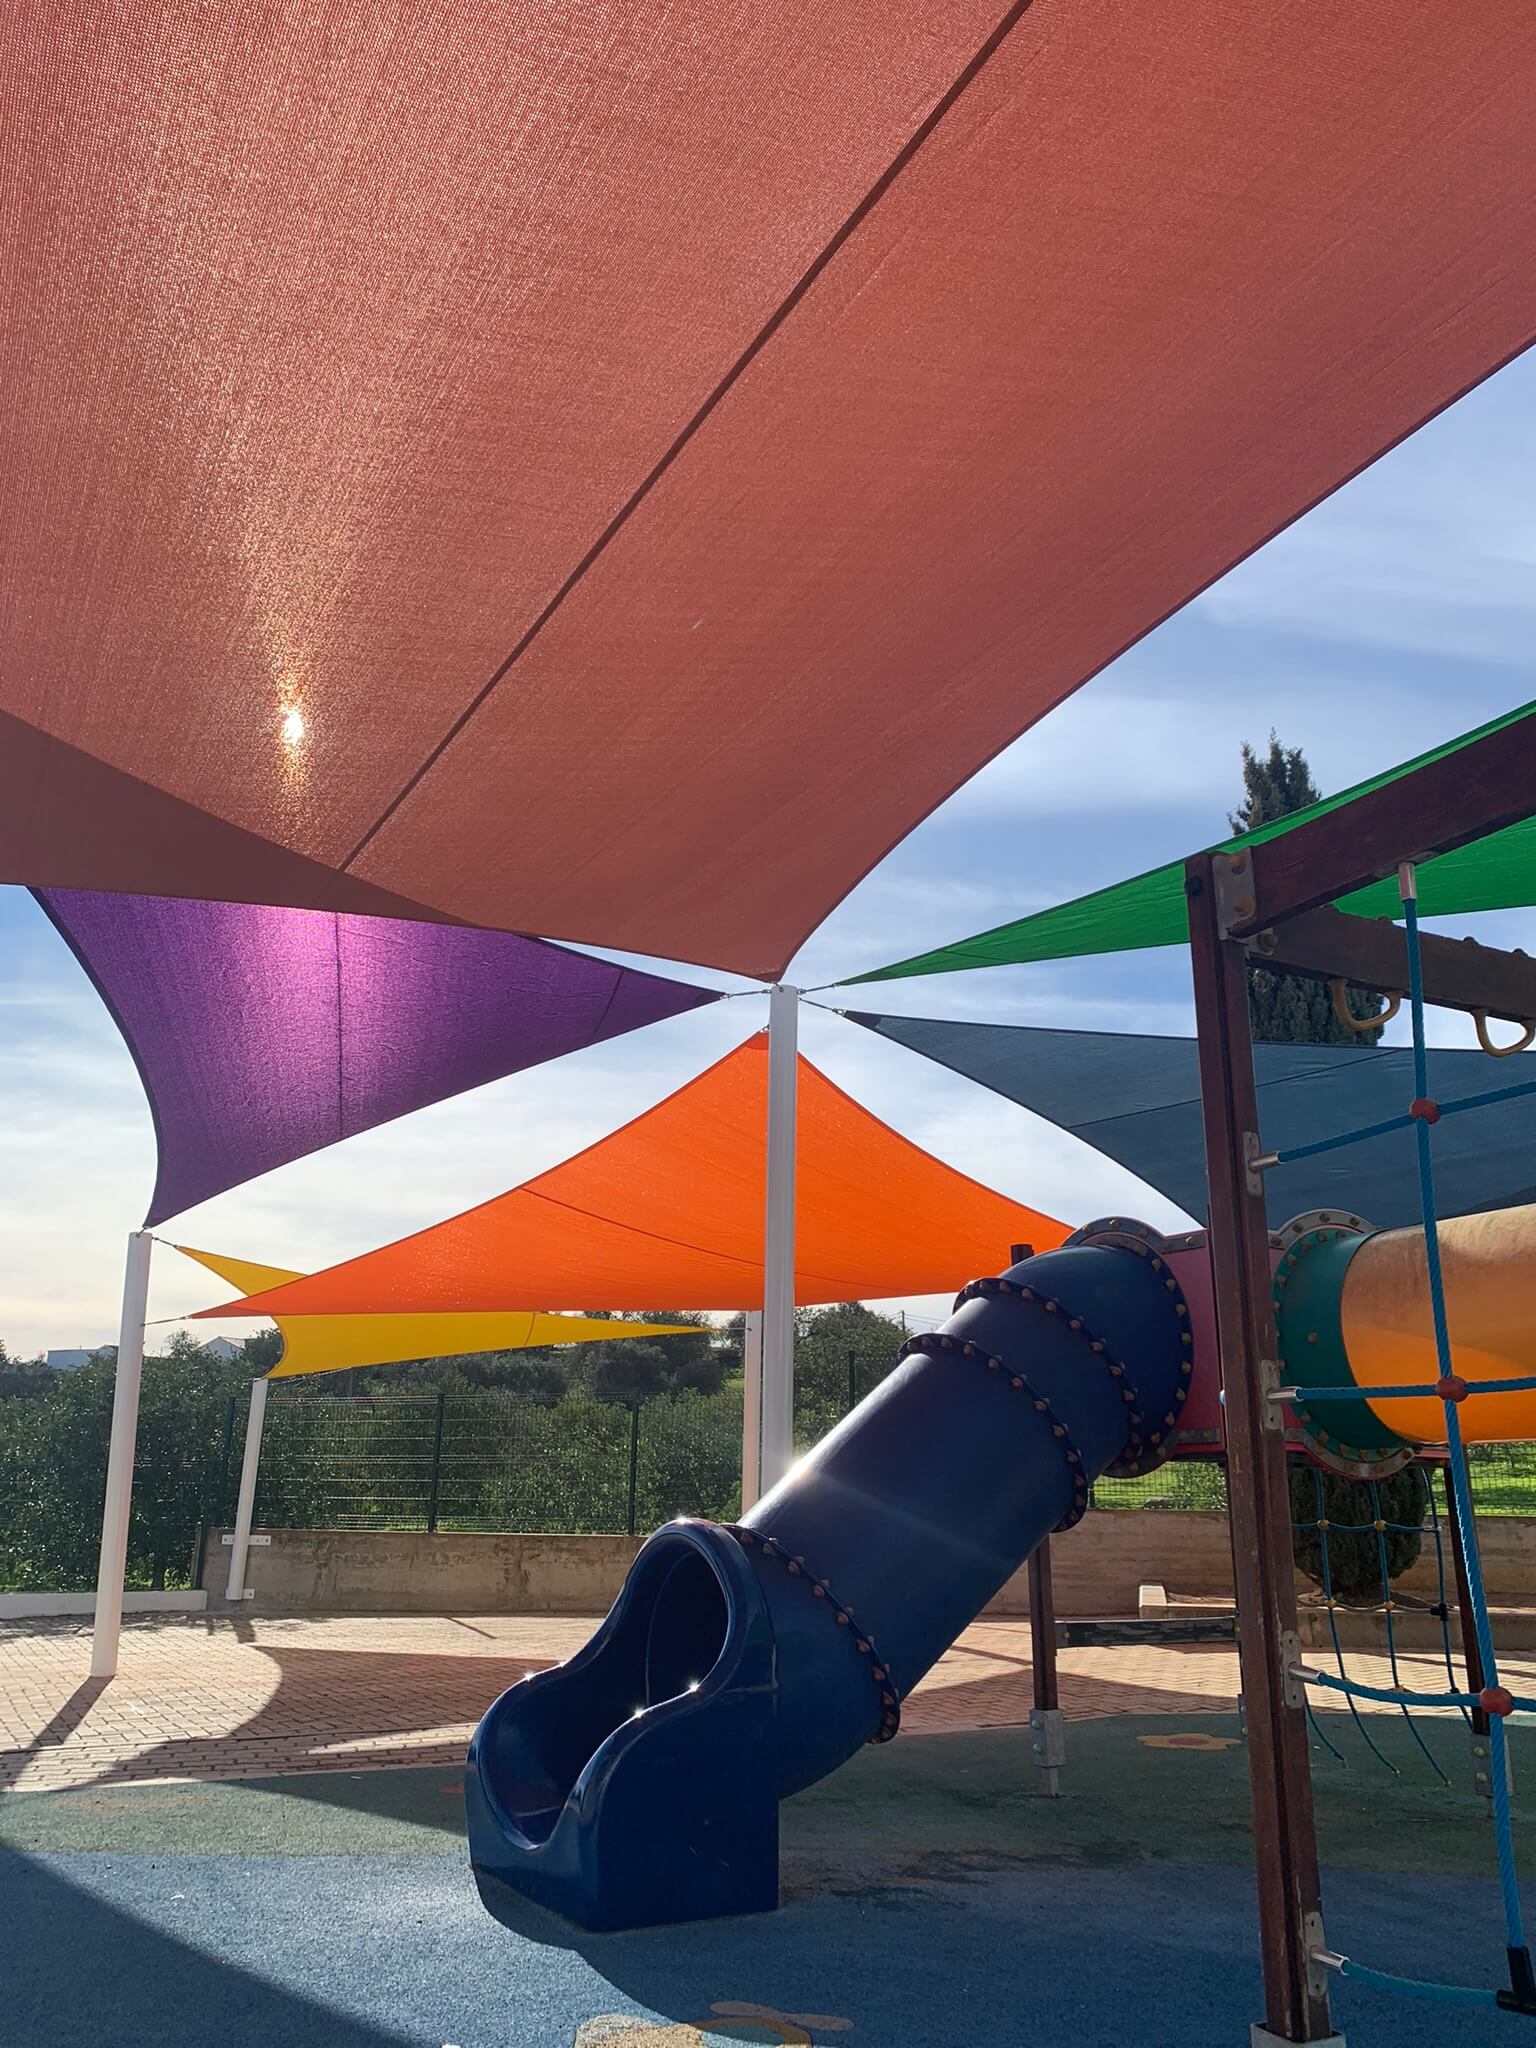 Parque infantil com toldos coloridos